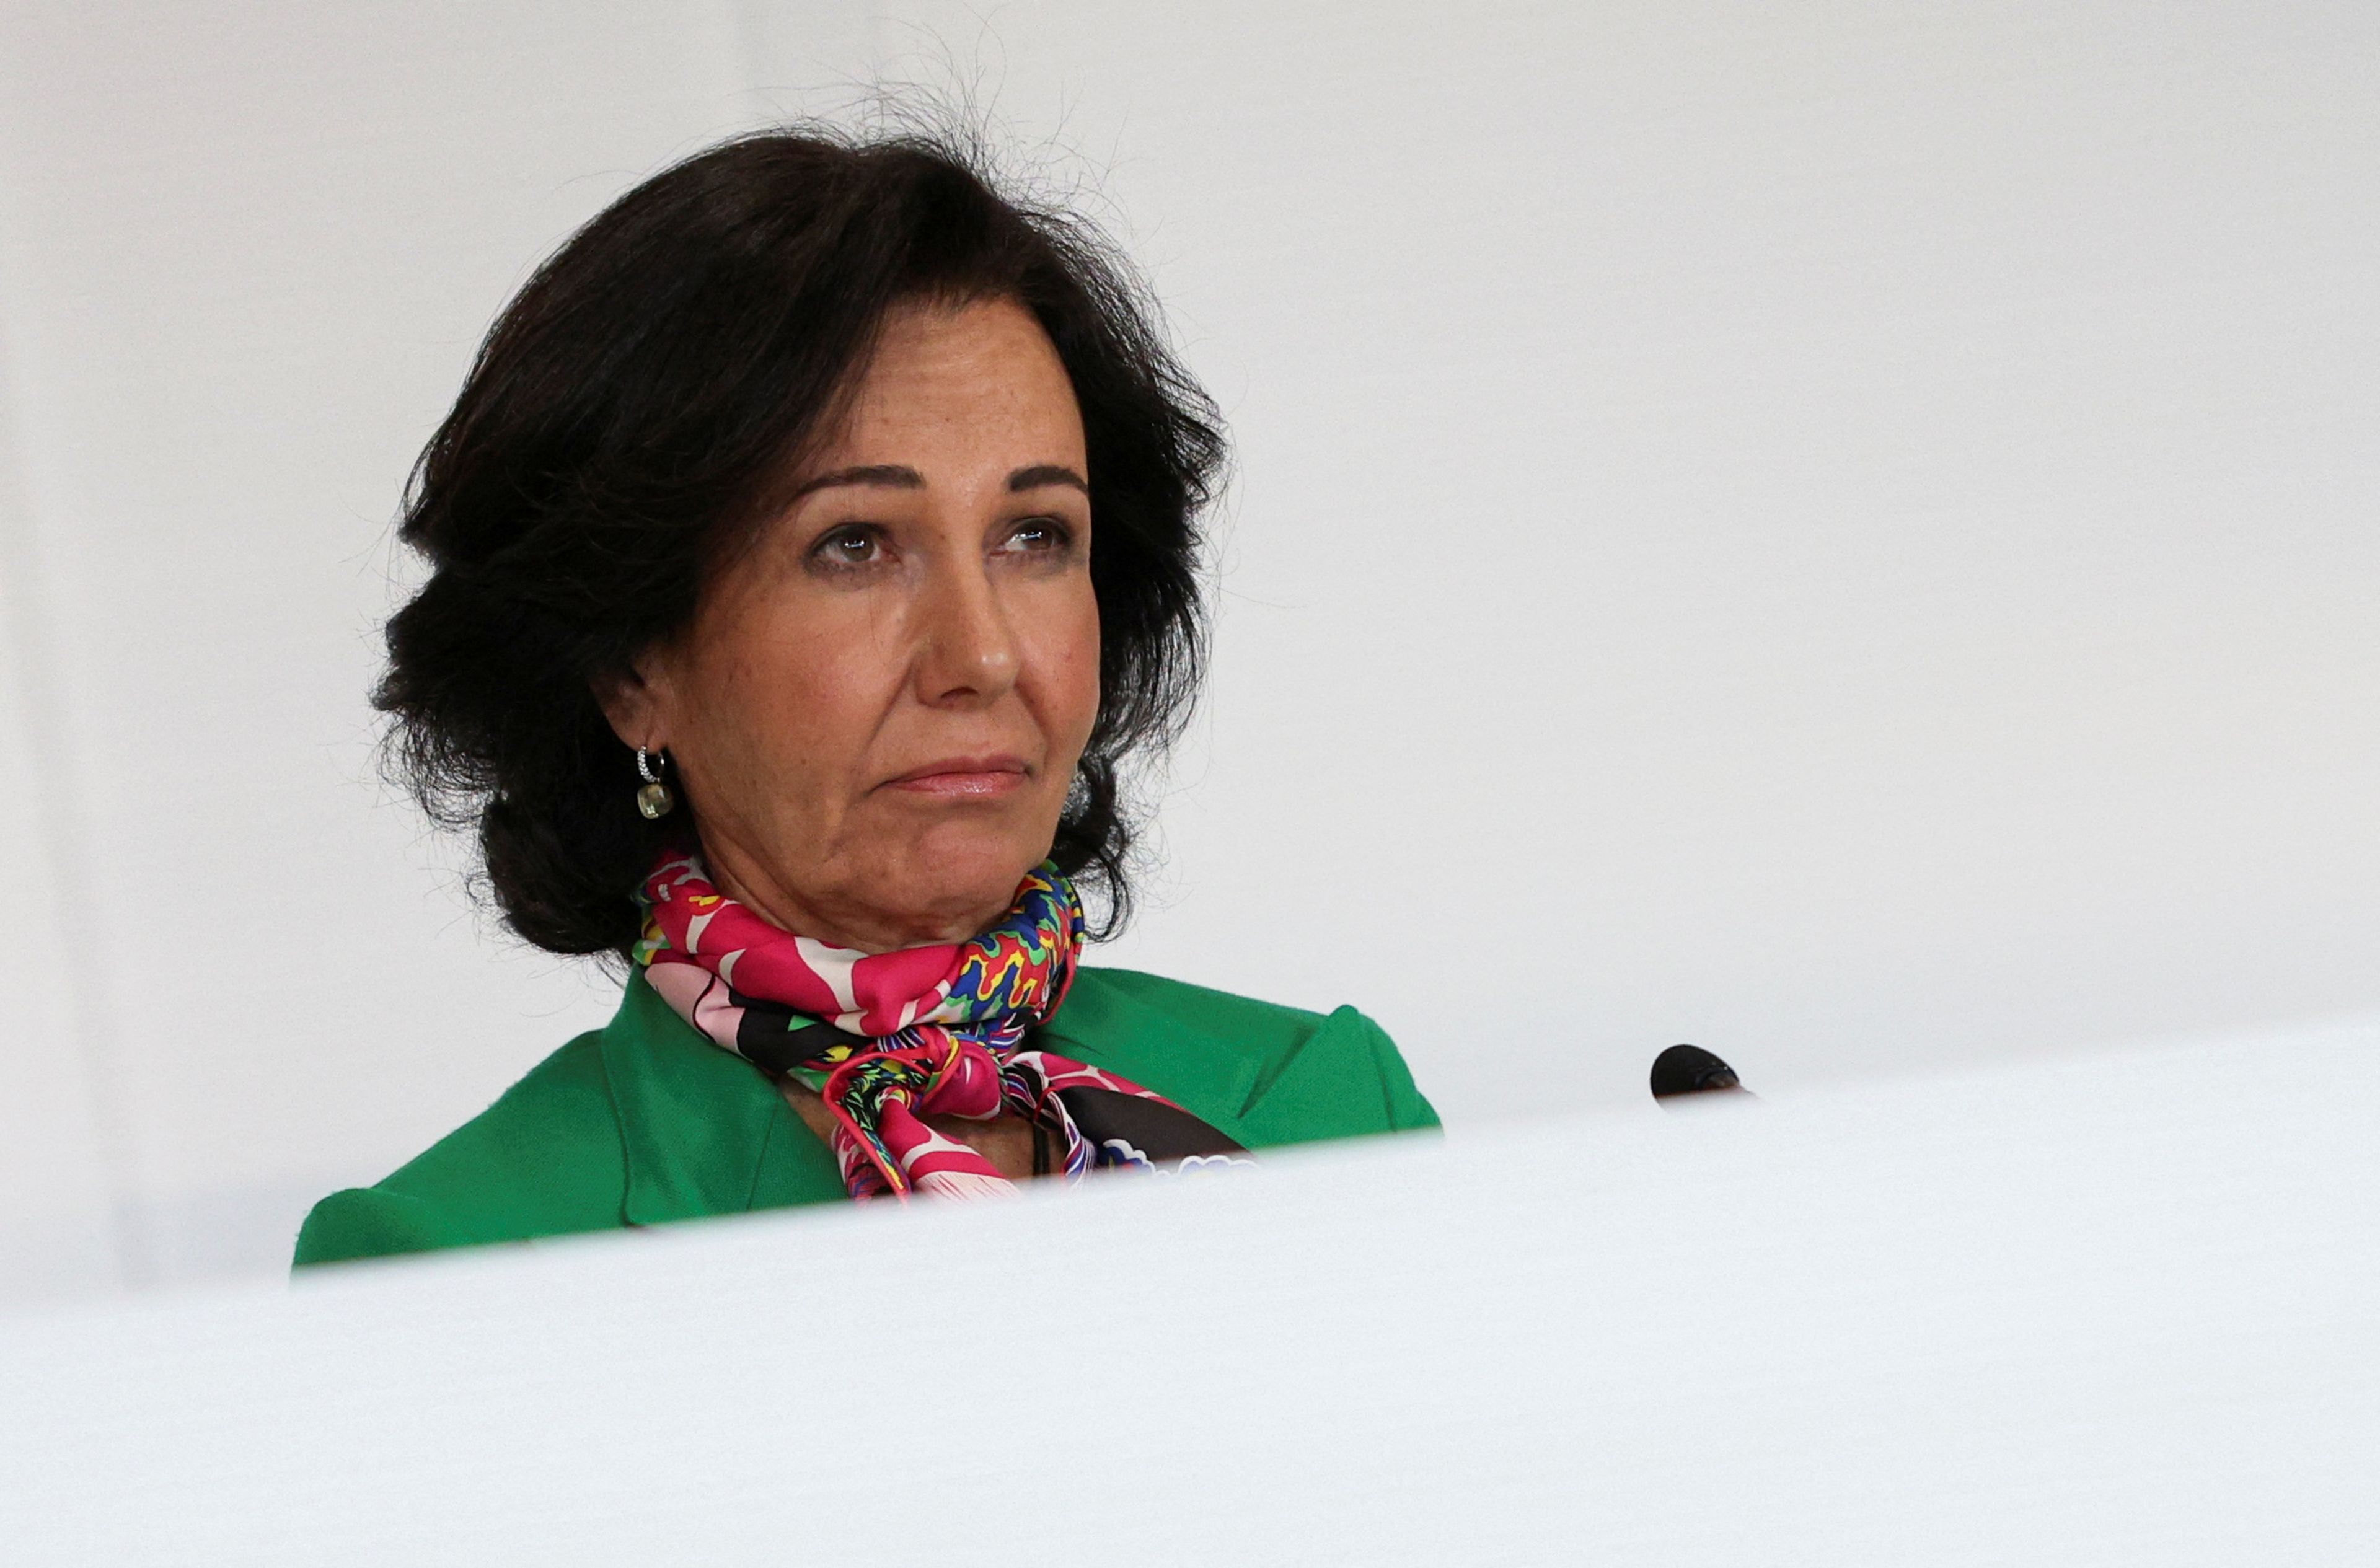 Ana Botín, presidenta del Grupo Santander.